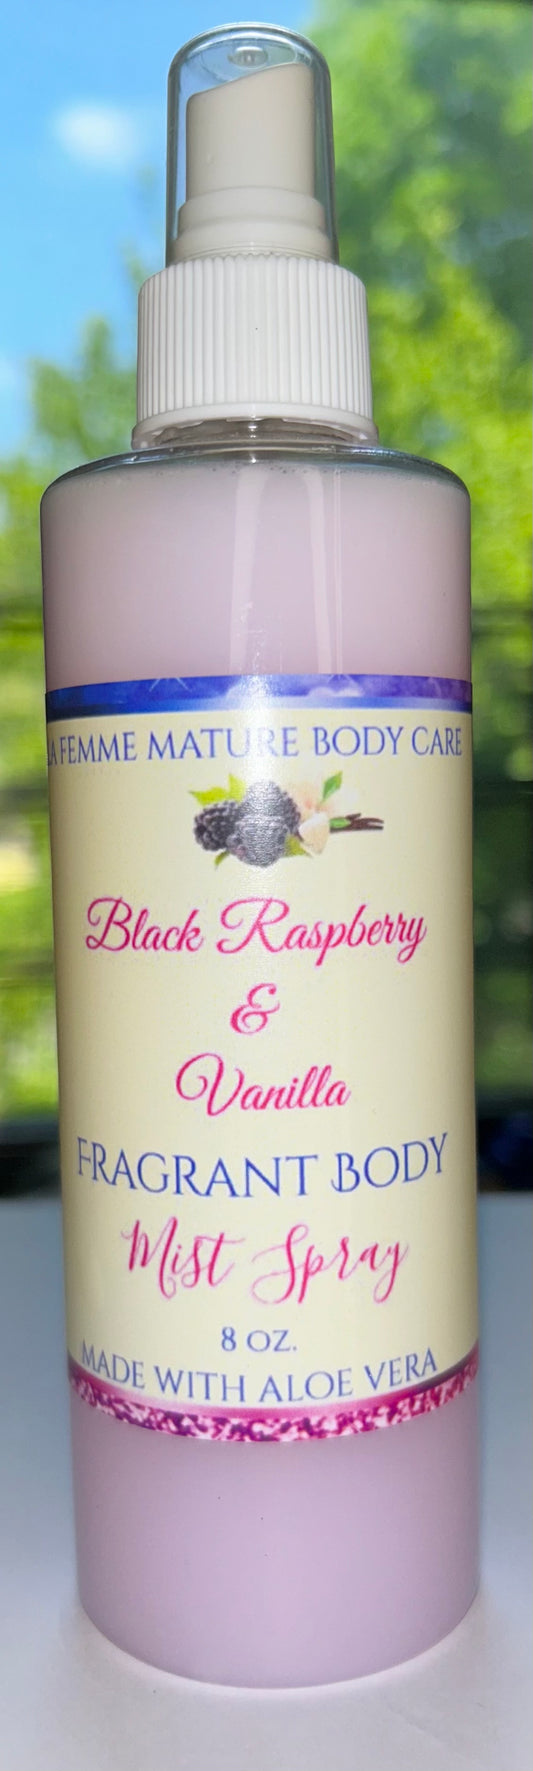 Black Raspberry & Vanilla Fragrant Body Mist Spray